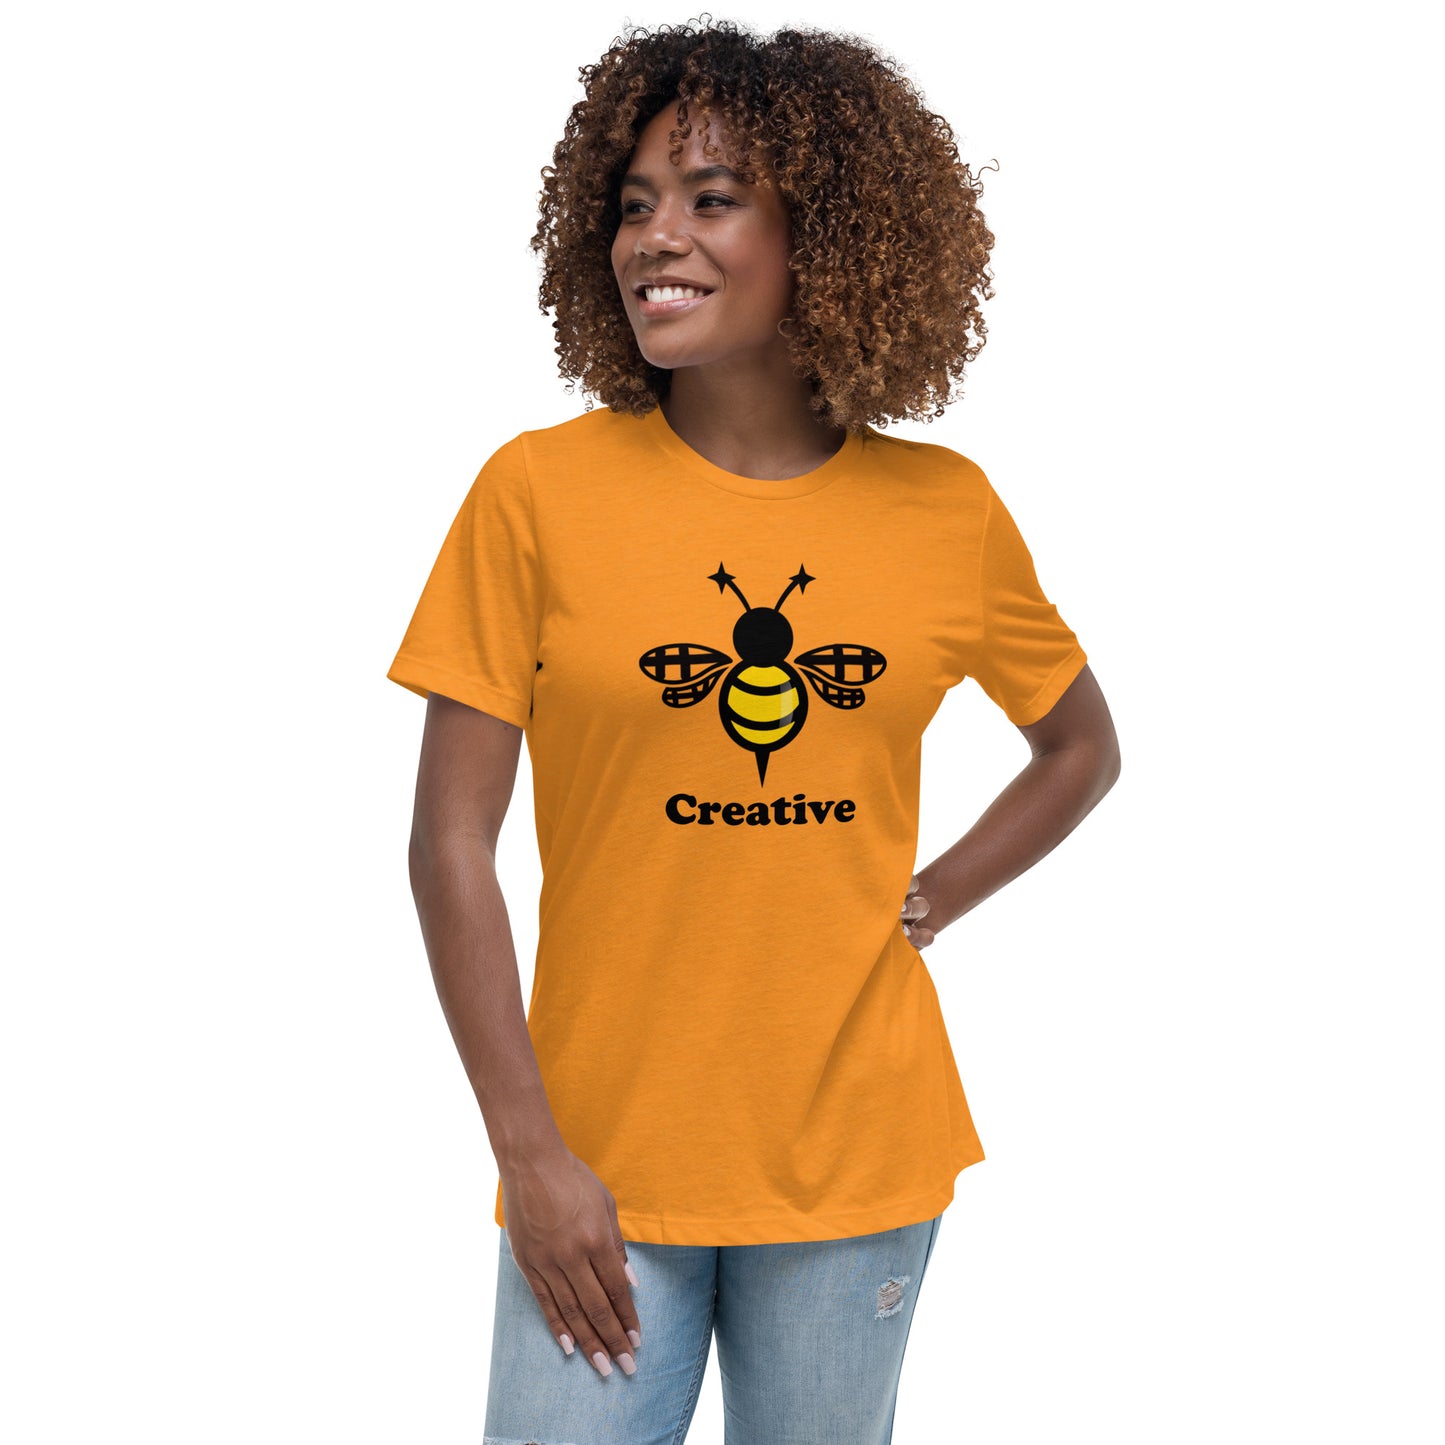 Bee Creative Women's Relaxed T-Shirt